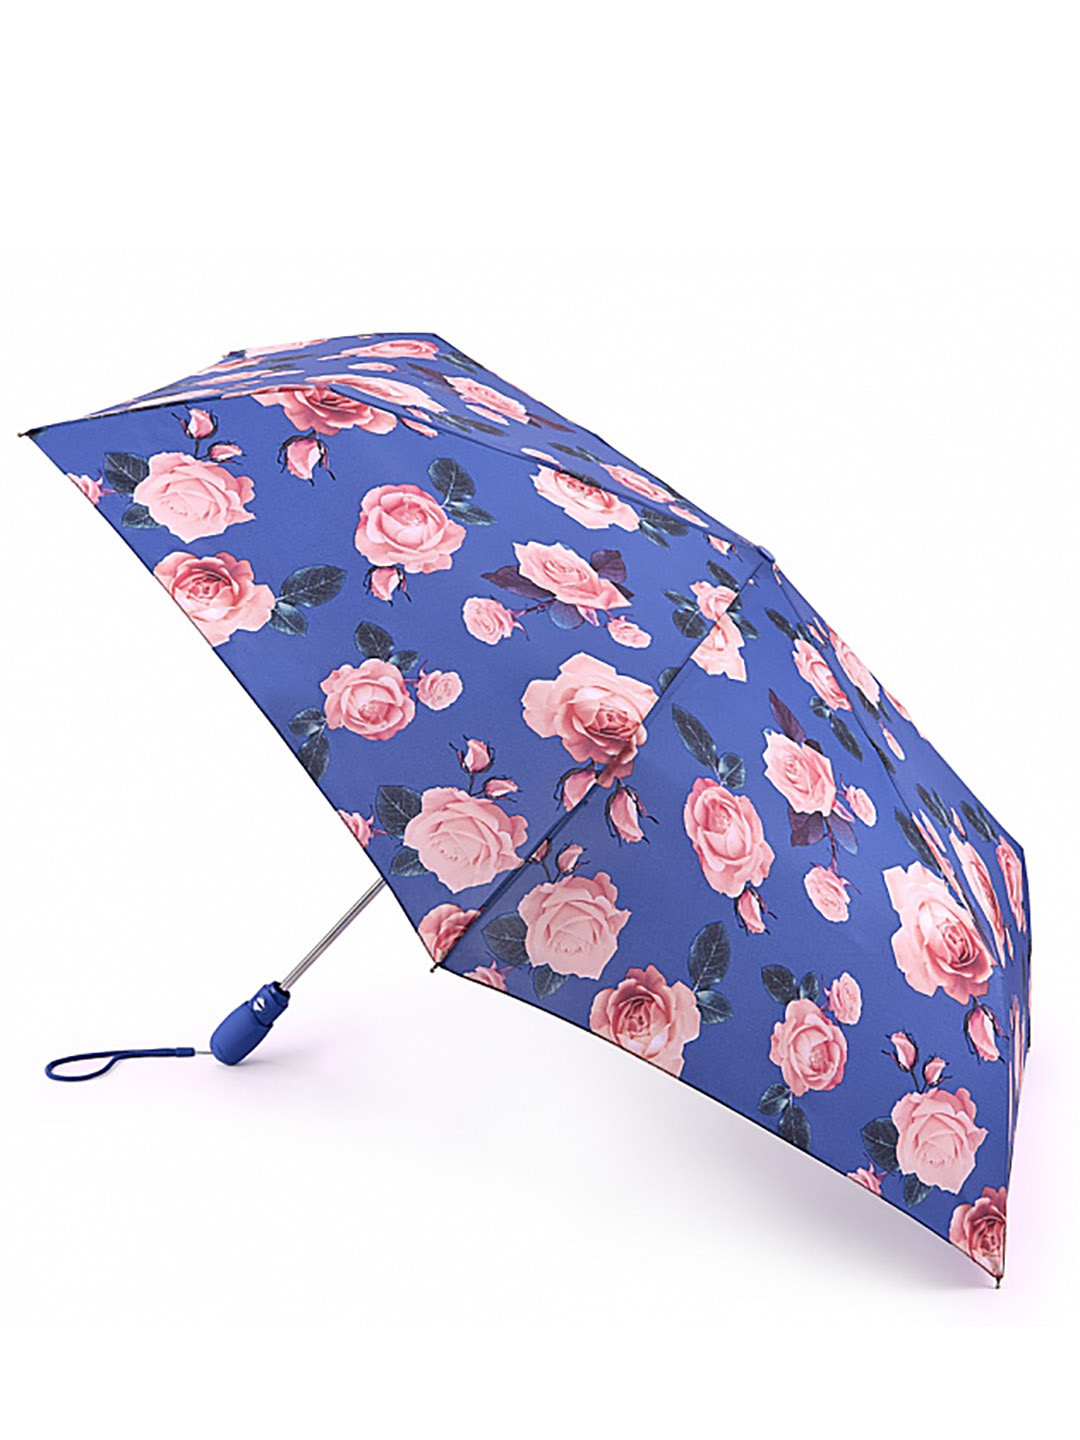 Фото Компактный женский зонт-автомат с бутонами роз 